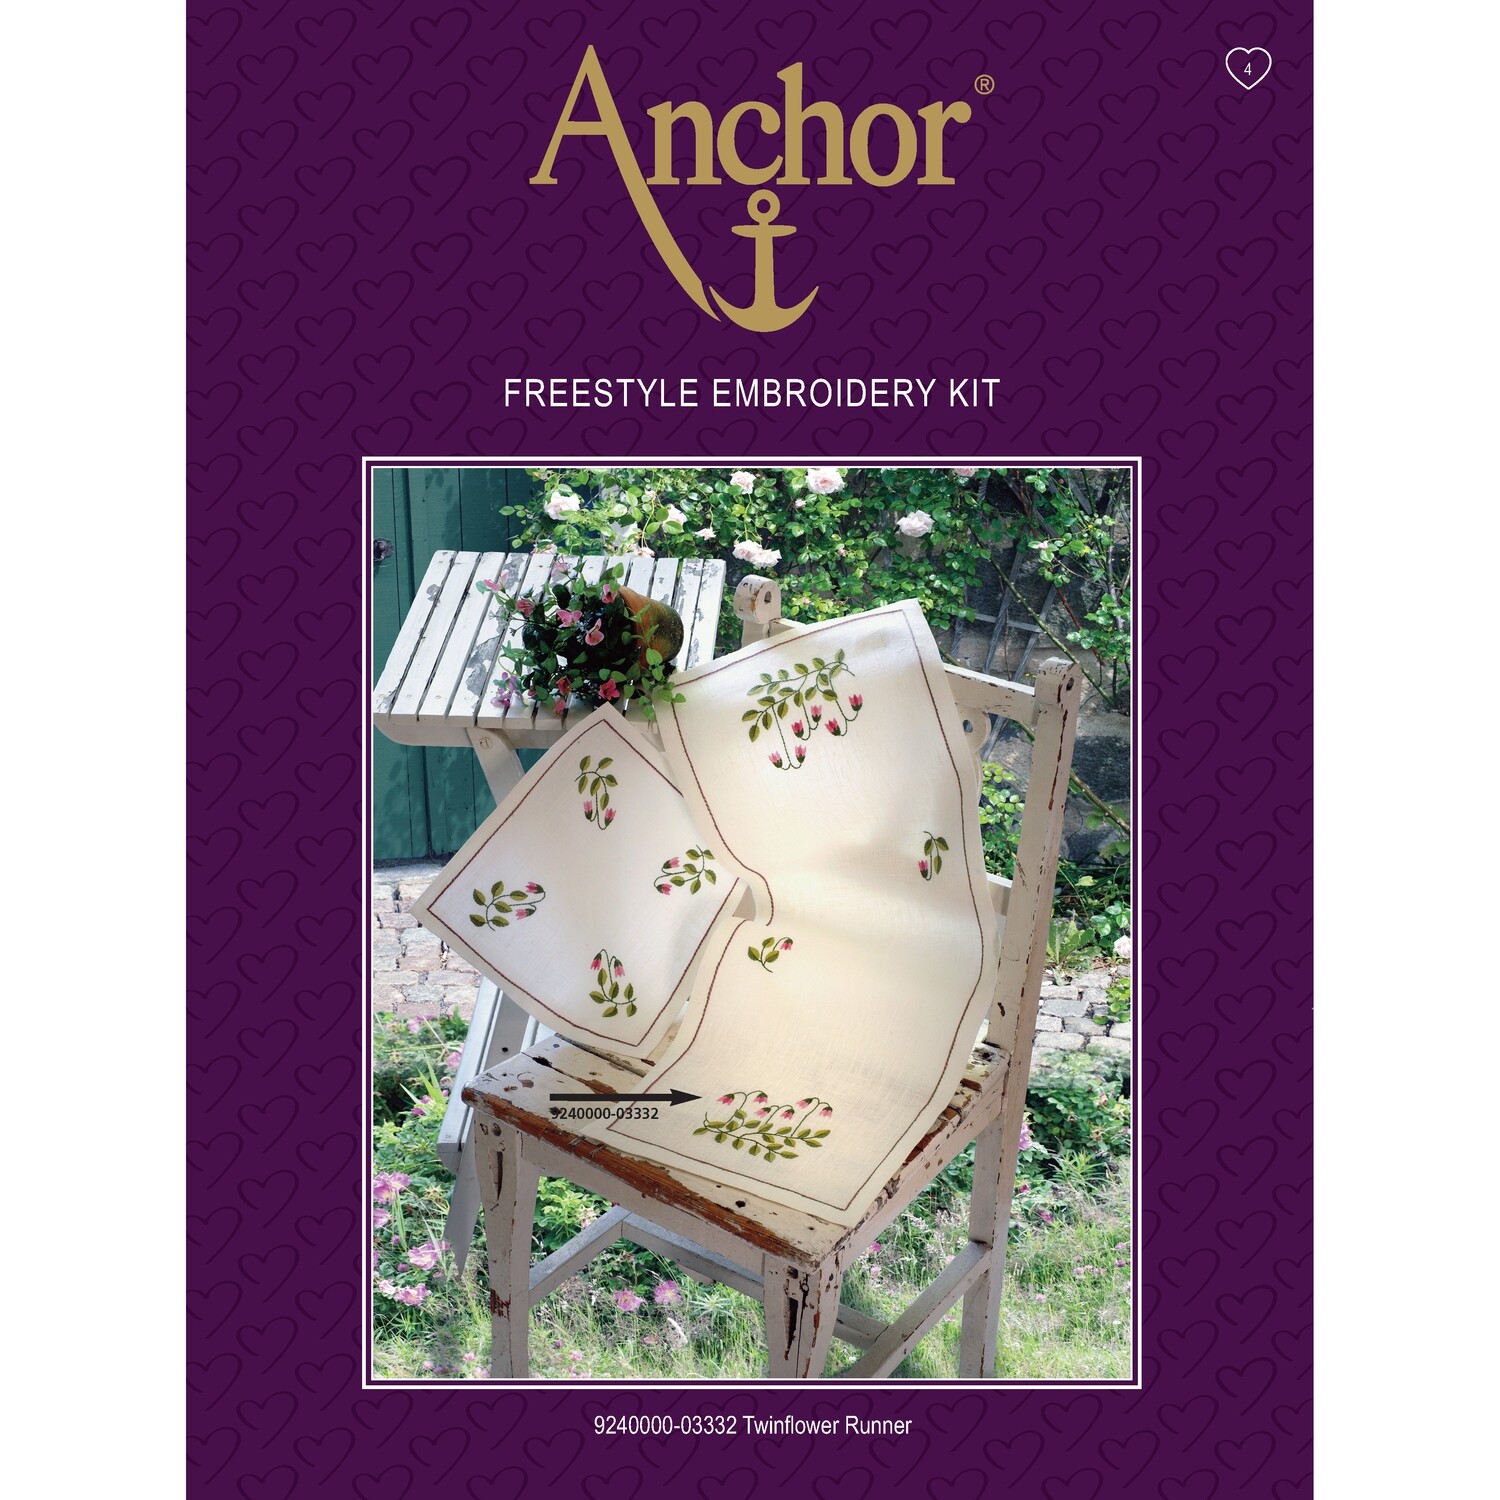 Anchor Essentials Freestyle Kit - Twinflower Runner